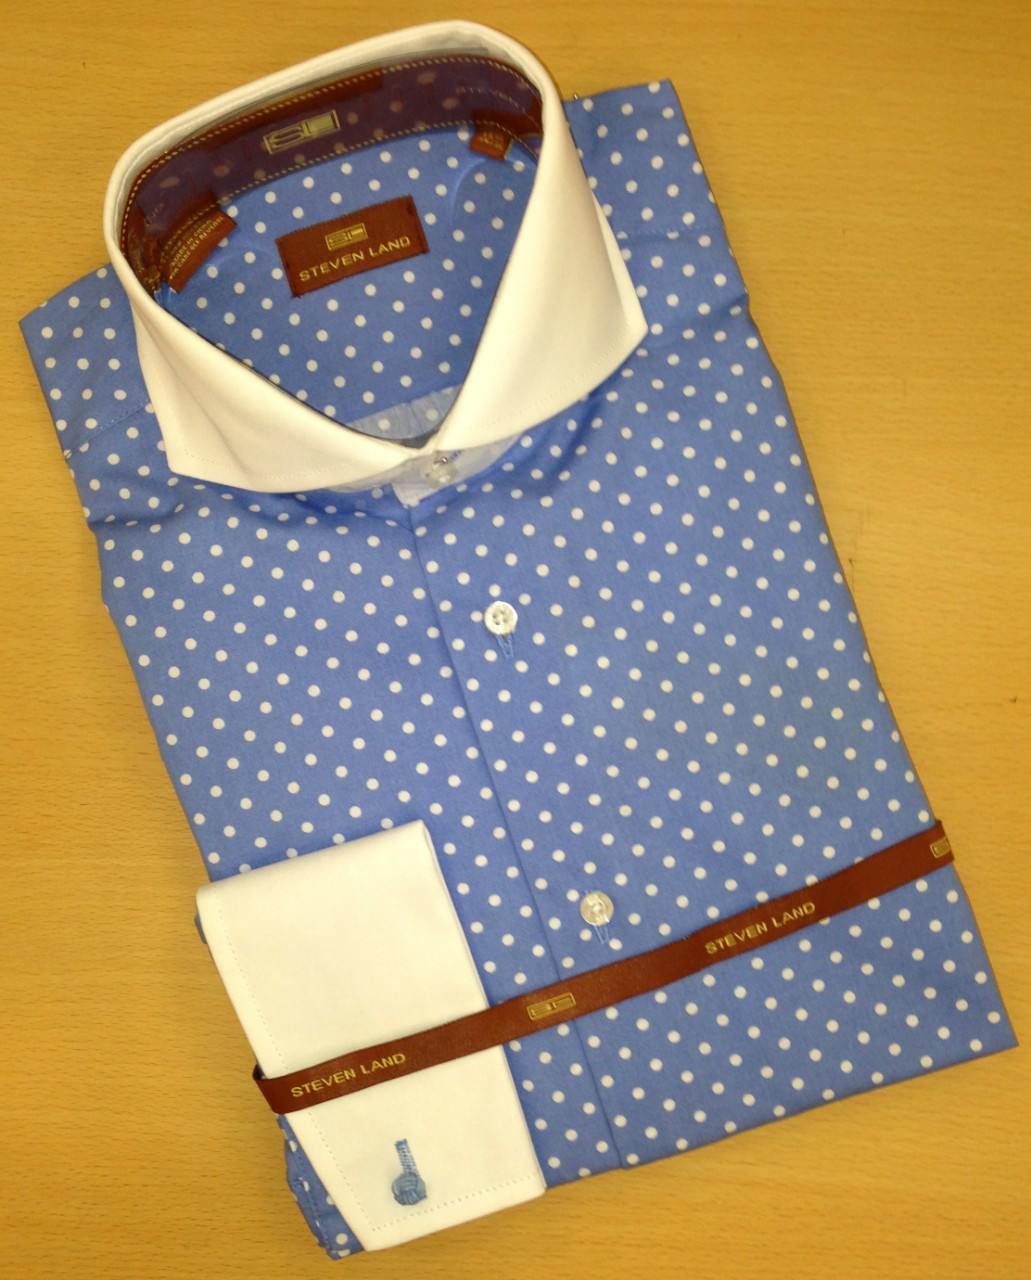 Men's Steven Land Dress Shirt - French Blue Polka Dot DS-918 (DS 918 ...